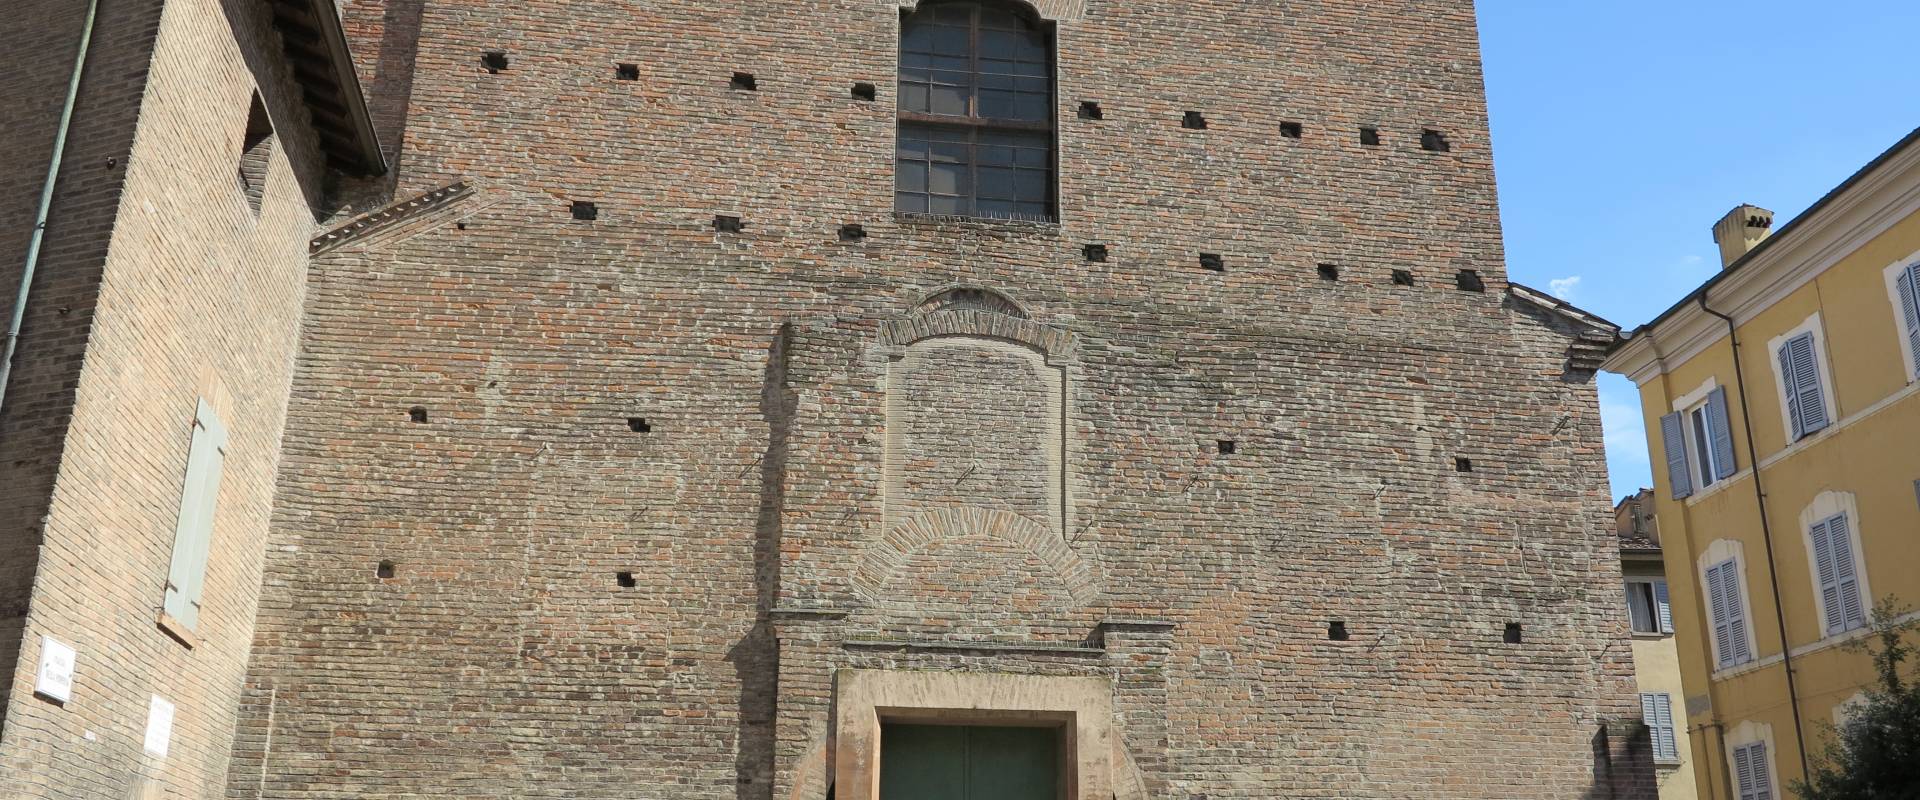 Chiesa di santa Maria di Pomposa, Modena (esterno),1 foto di Mongolo1984